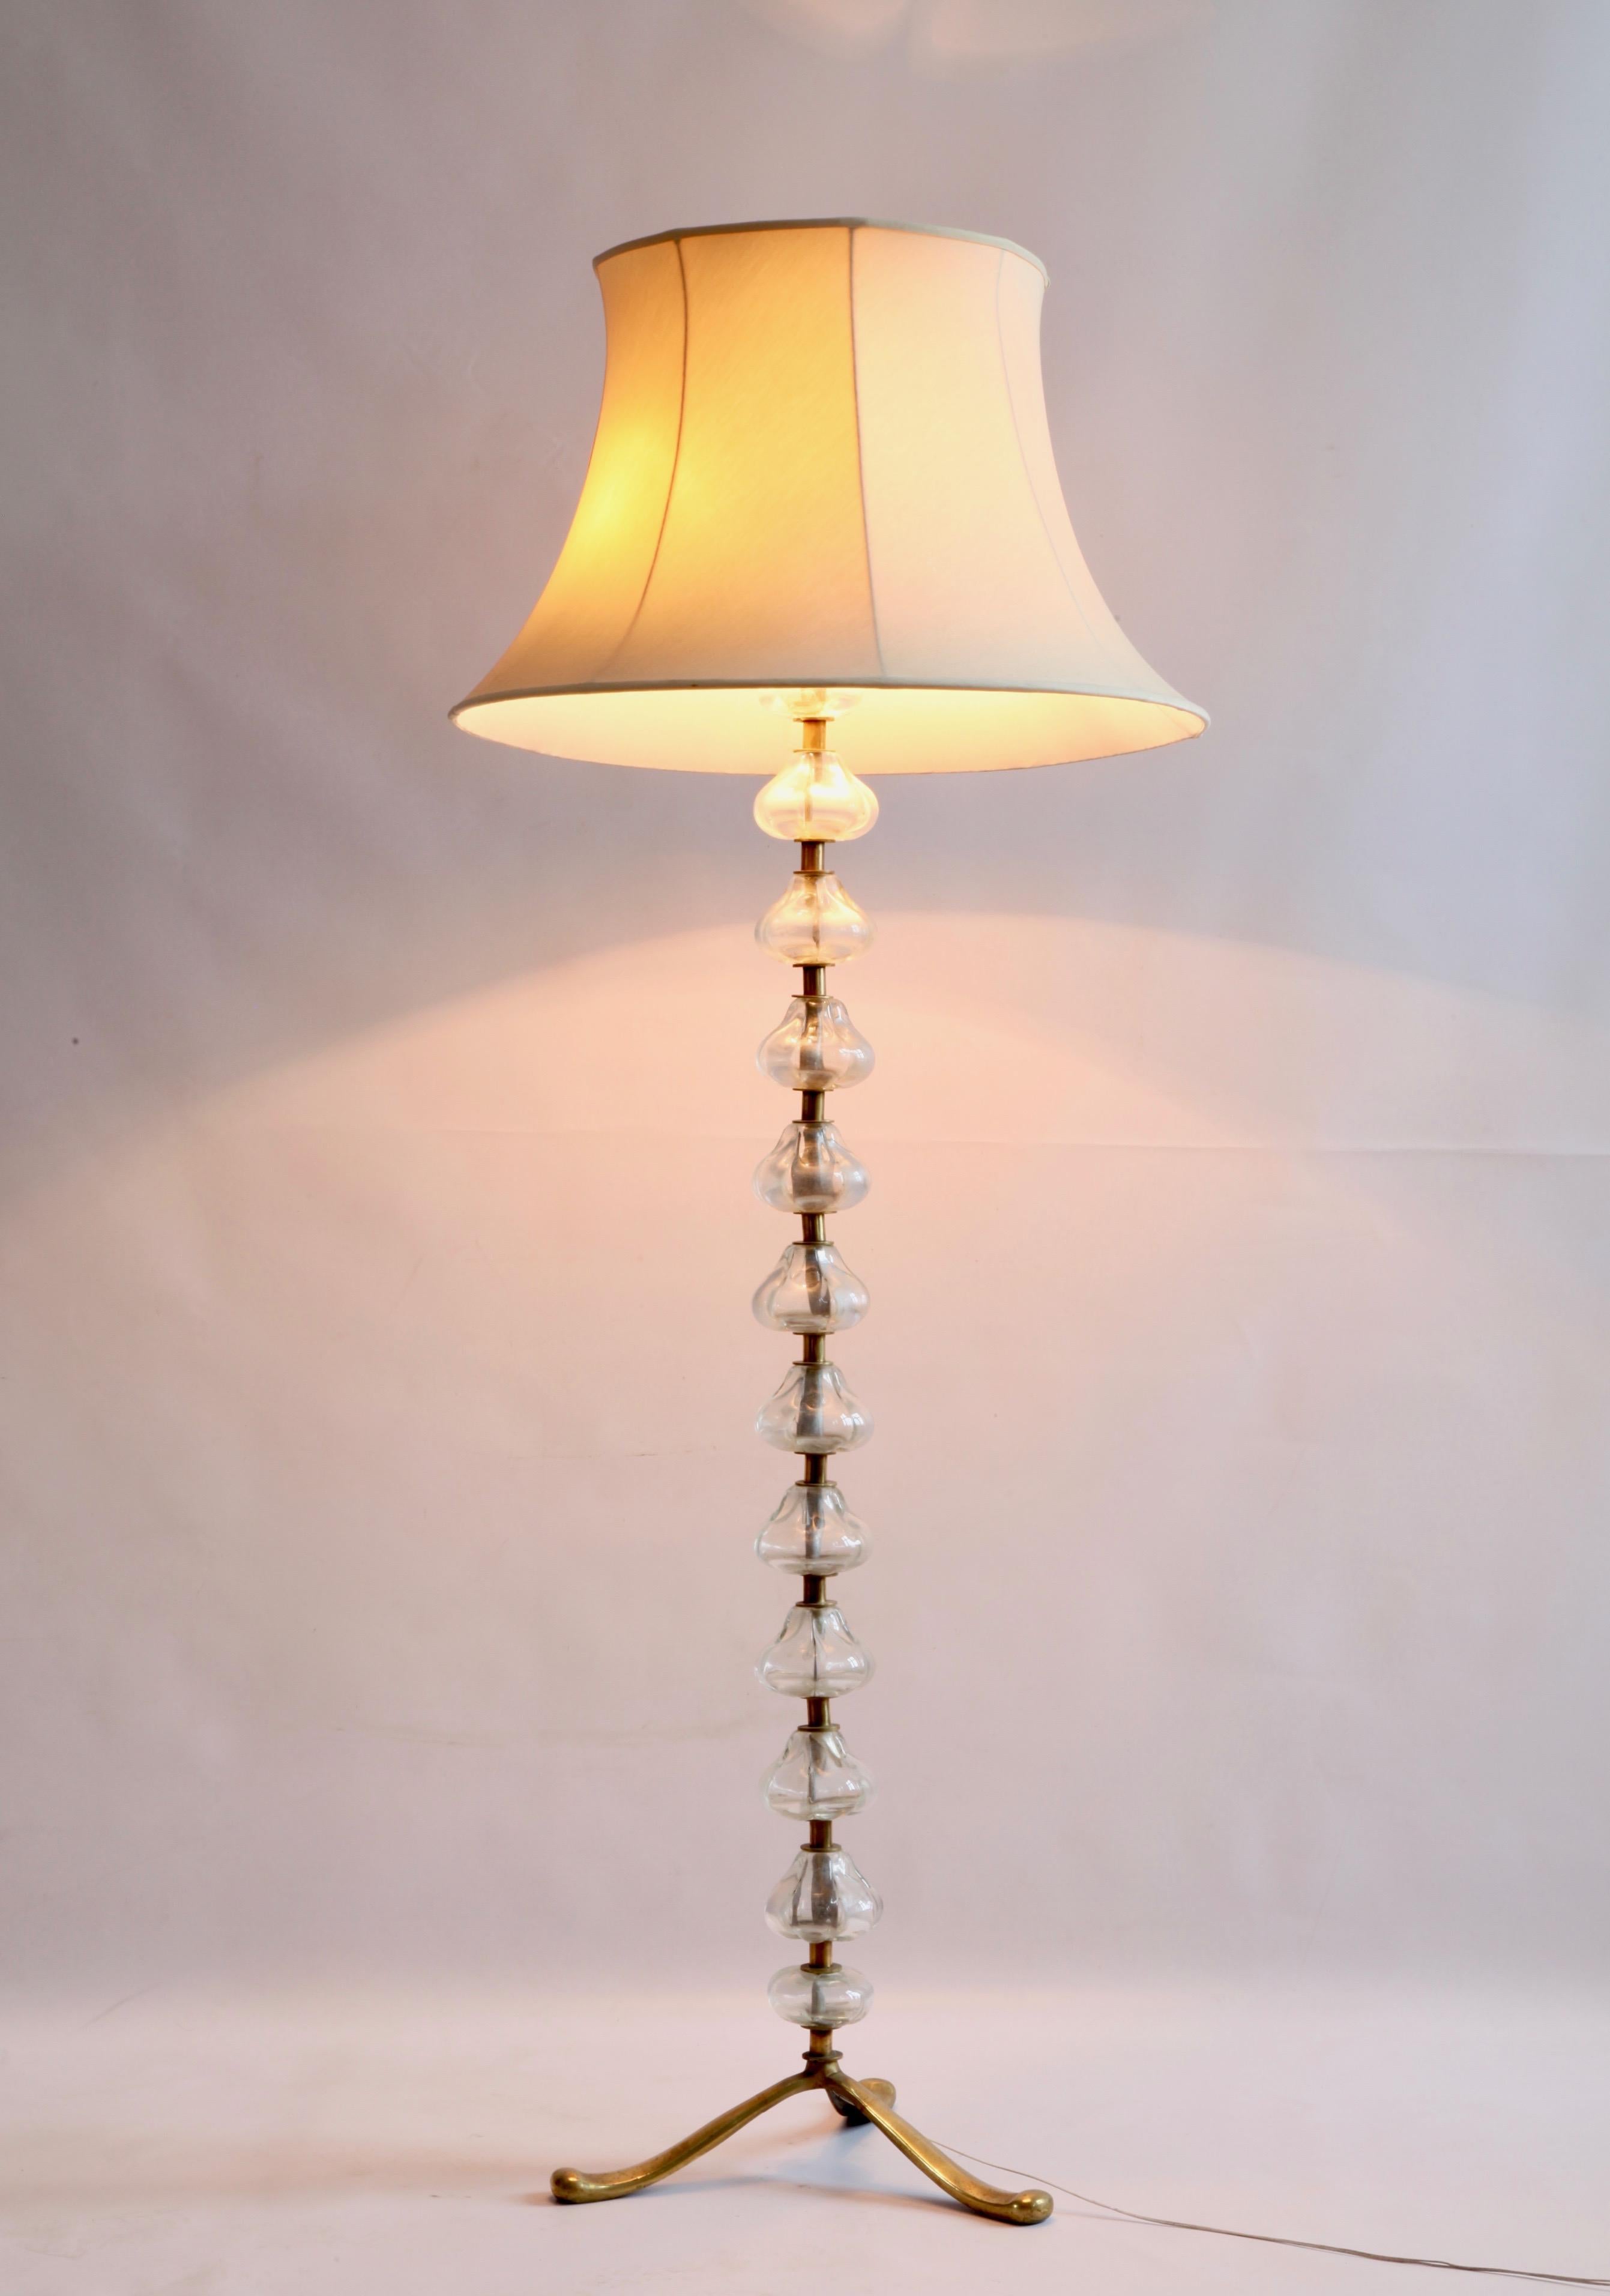 Murano glass floor lamp. Elegant and slick design. Brass frame.